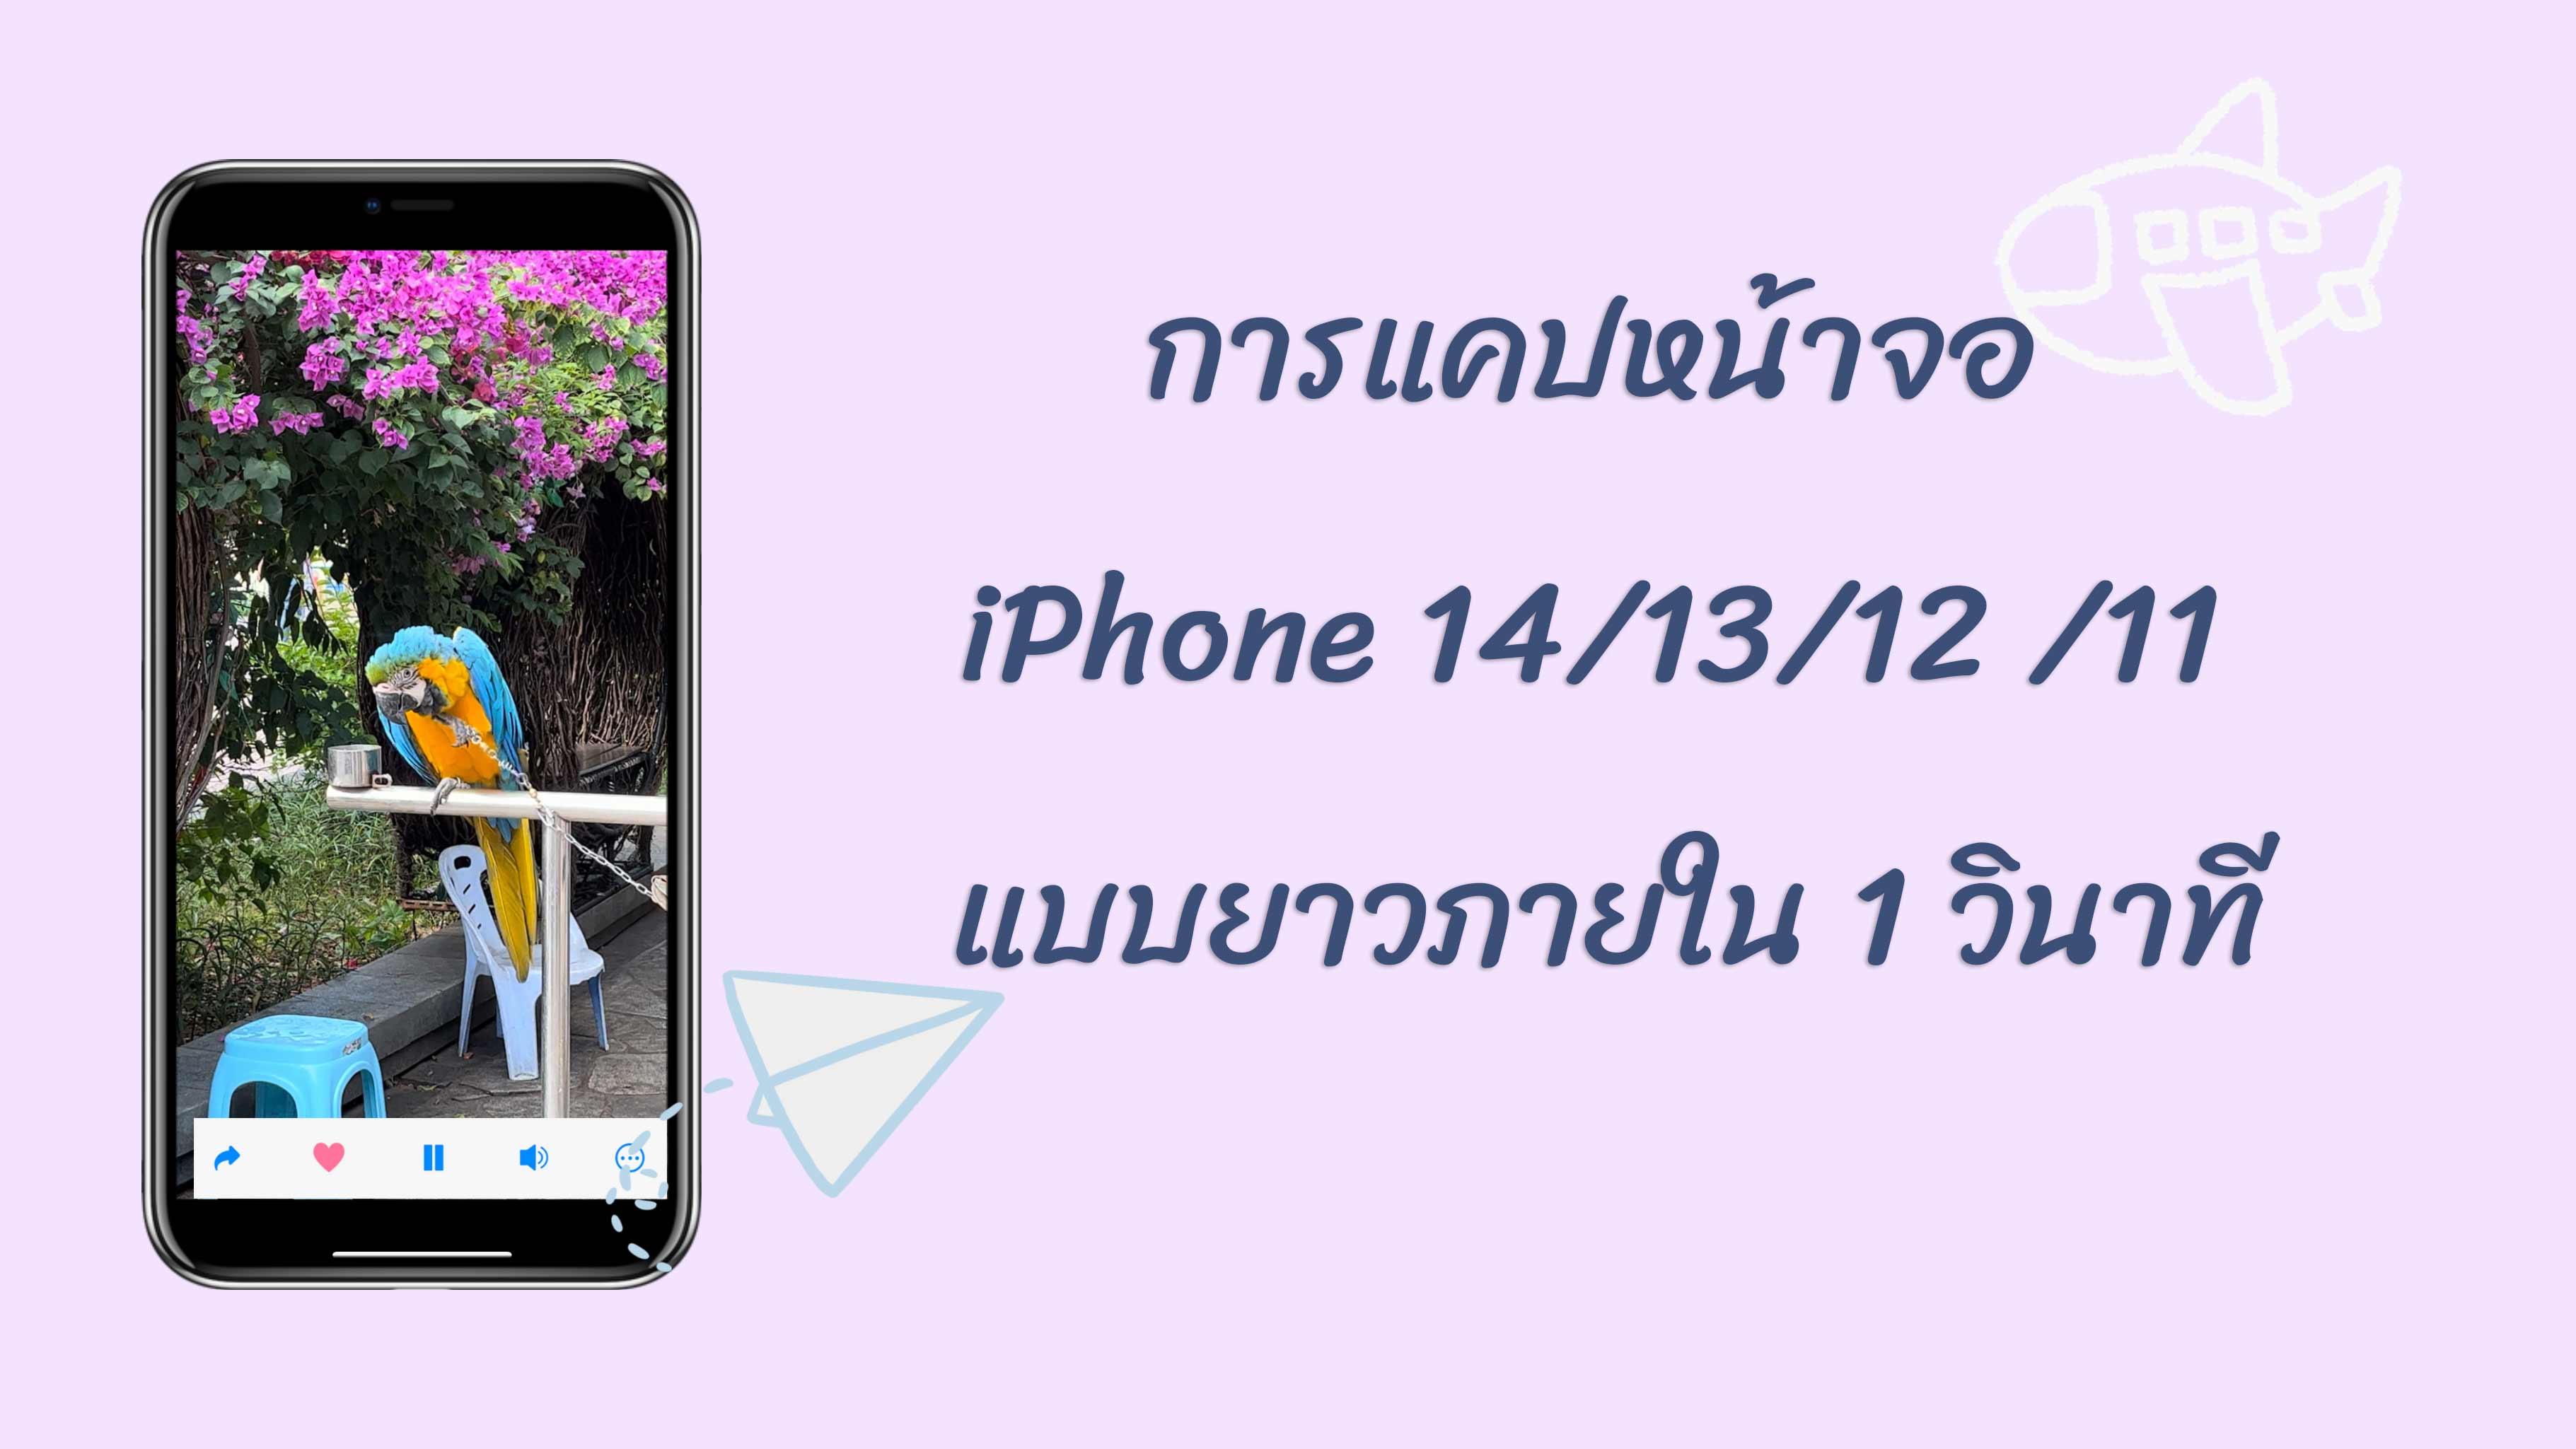 วิธีการแคปหน้าจอ iPhone 14/13/12 /11 | แคปหน้าจอไอโฟนแบบยาวภายใน 1 วินาที